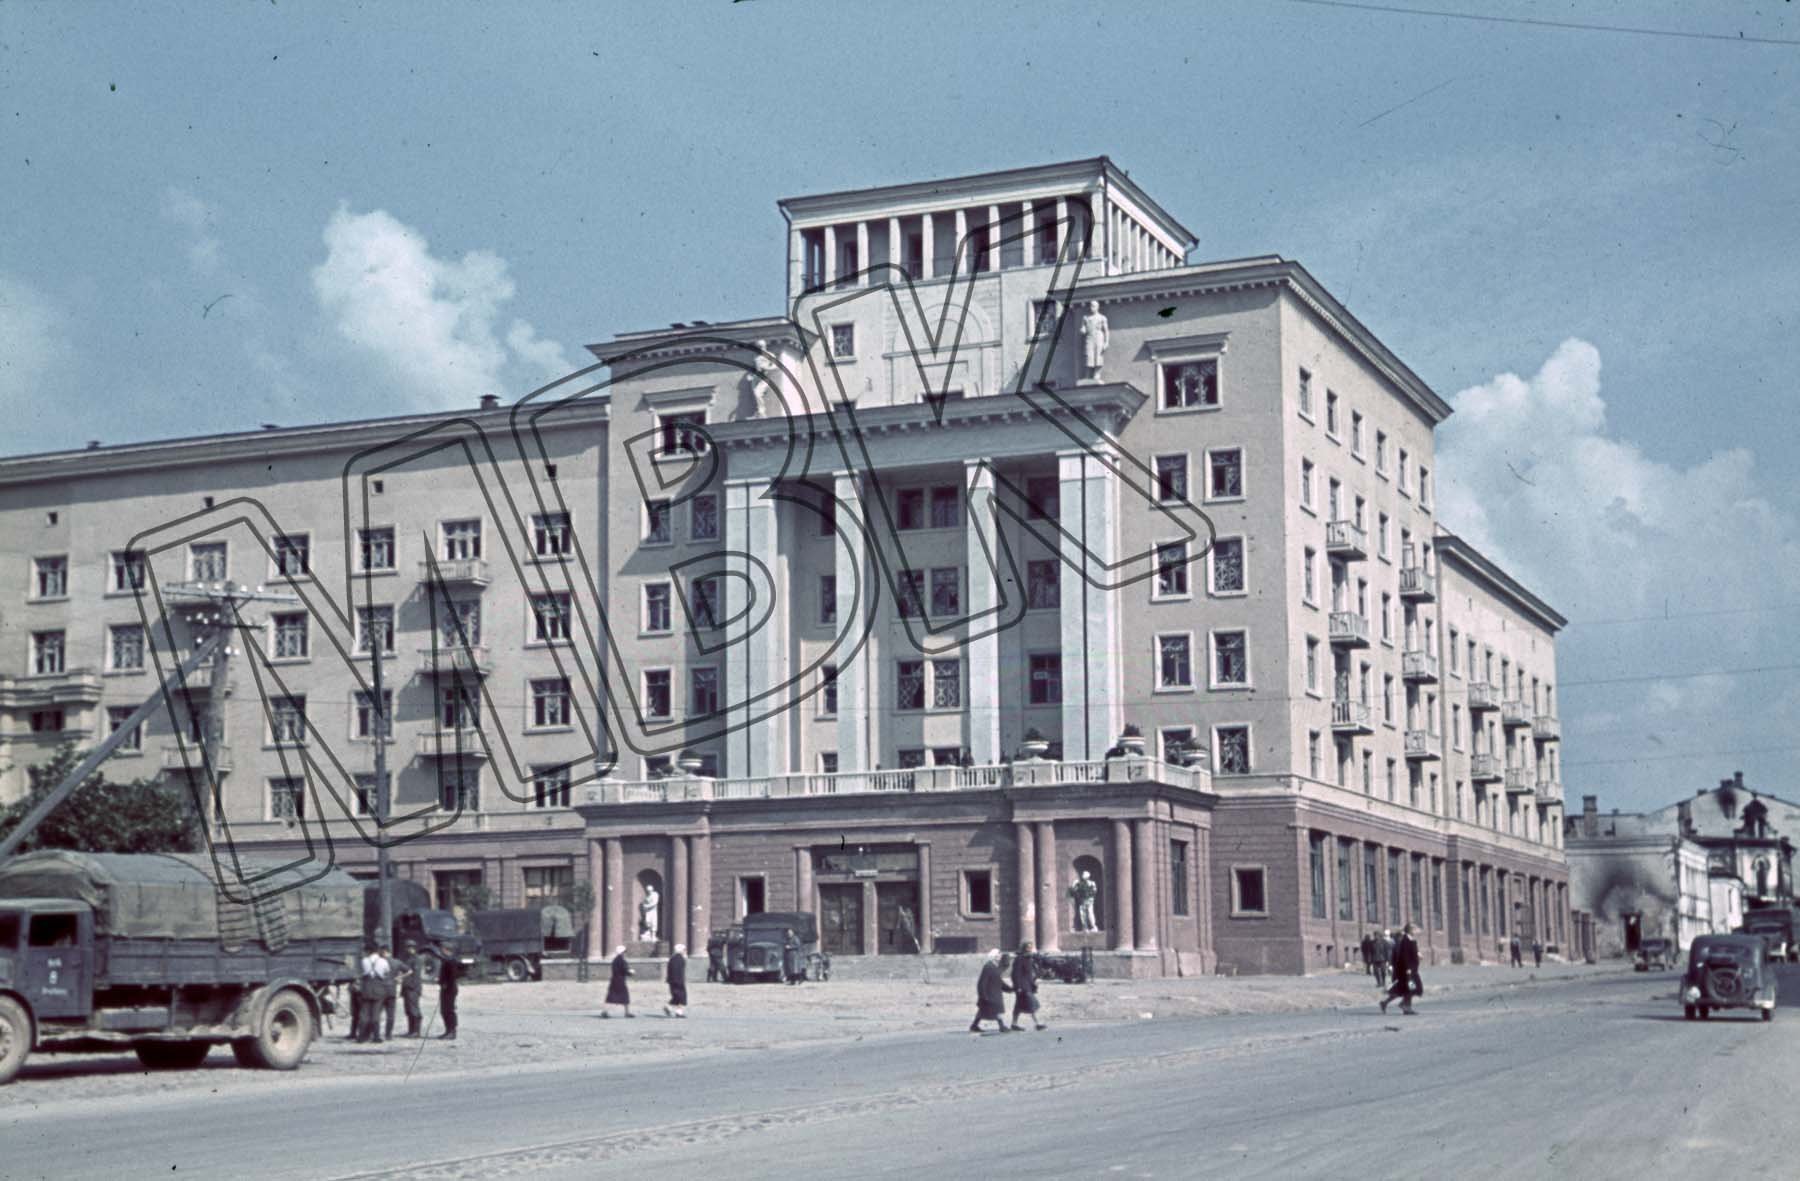 Fotografie: Gebäude des heutigen Hotels Smolensk, Smolensk, August 1941 (Museum Berlin-Karlshorst RR-P)